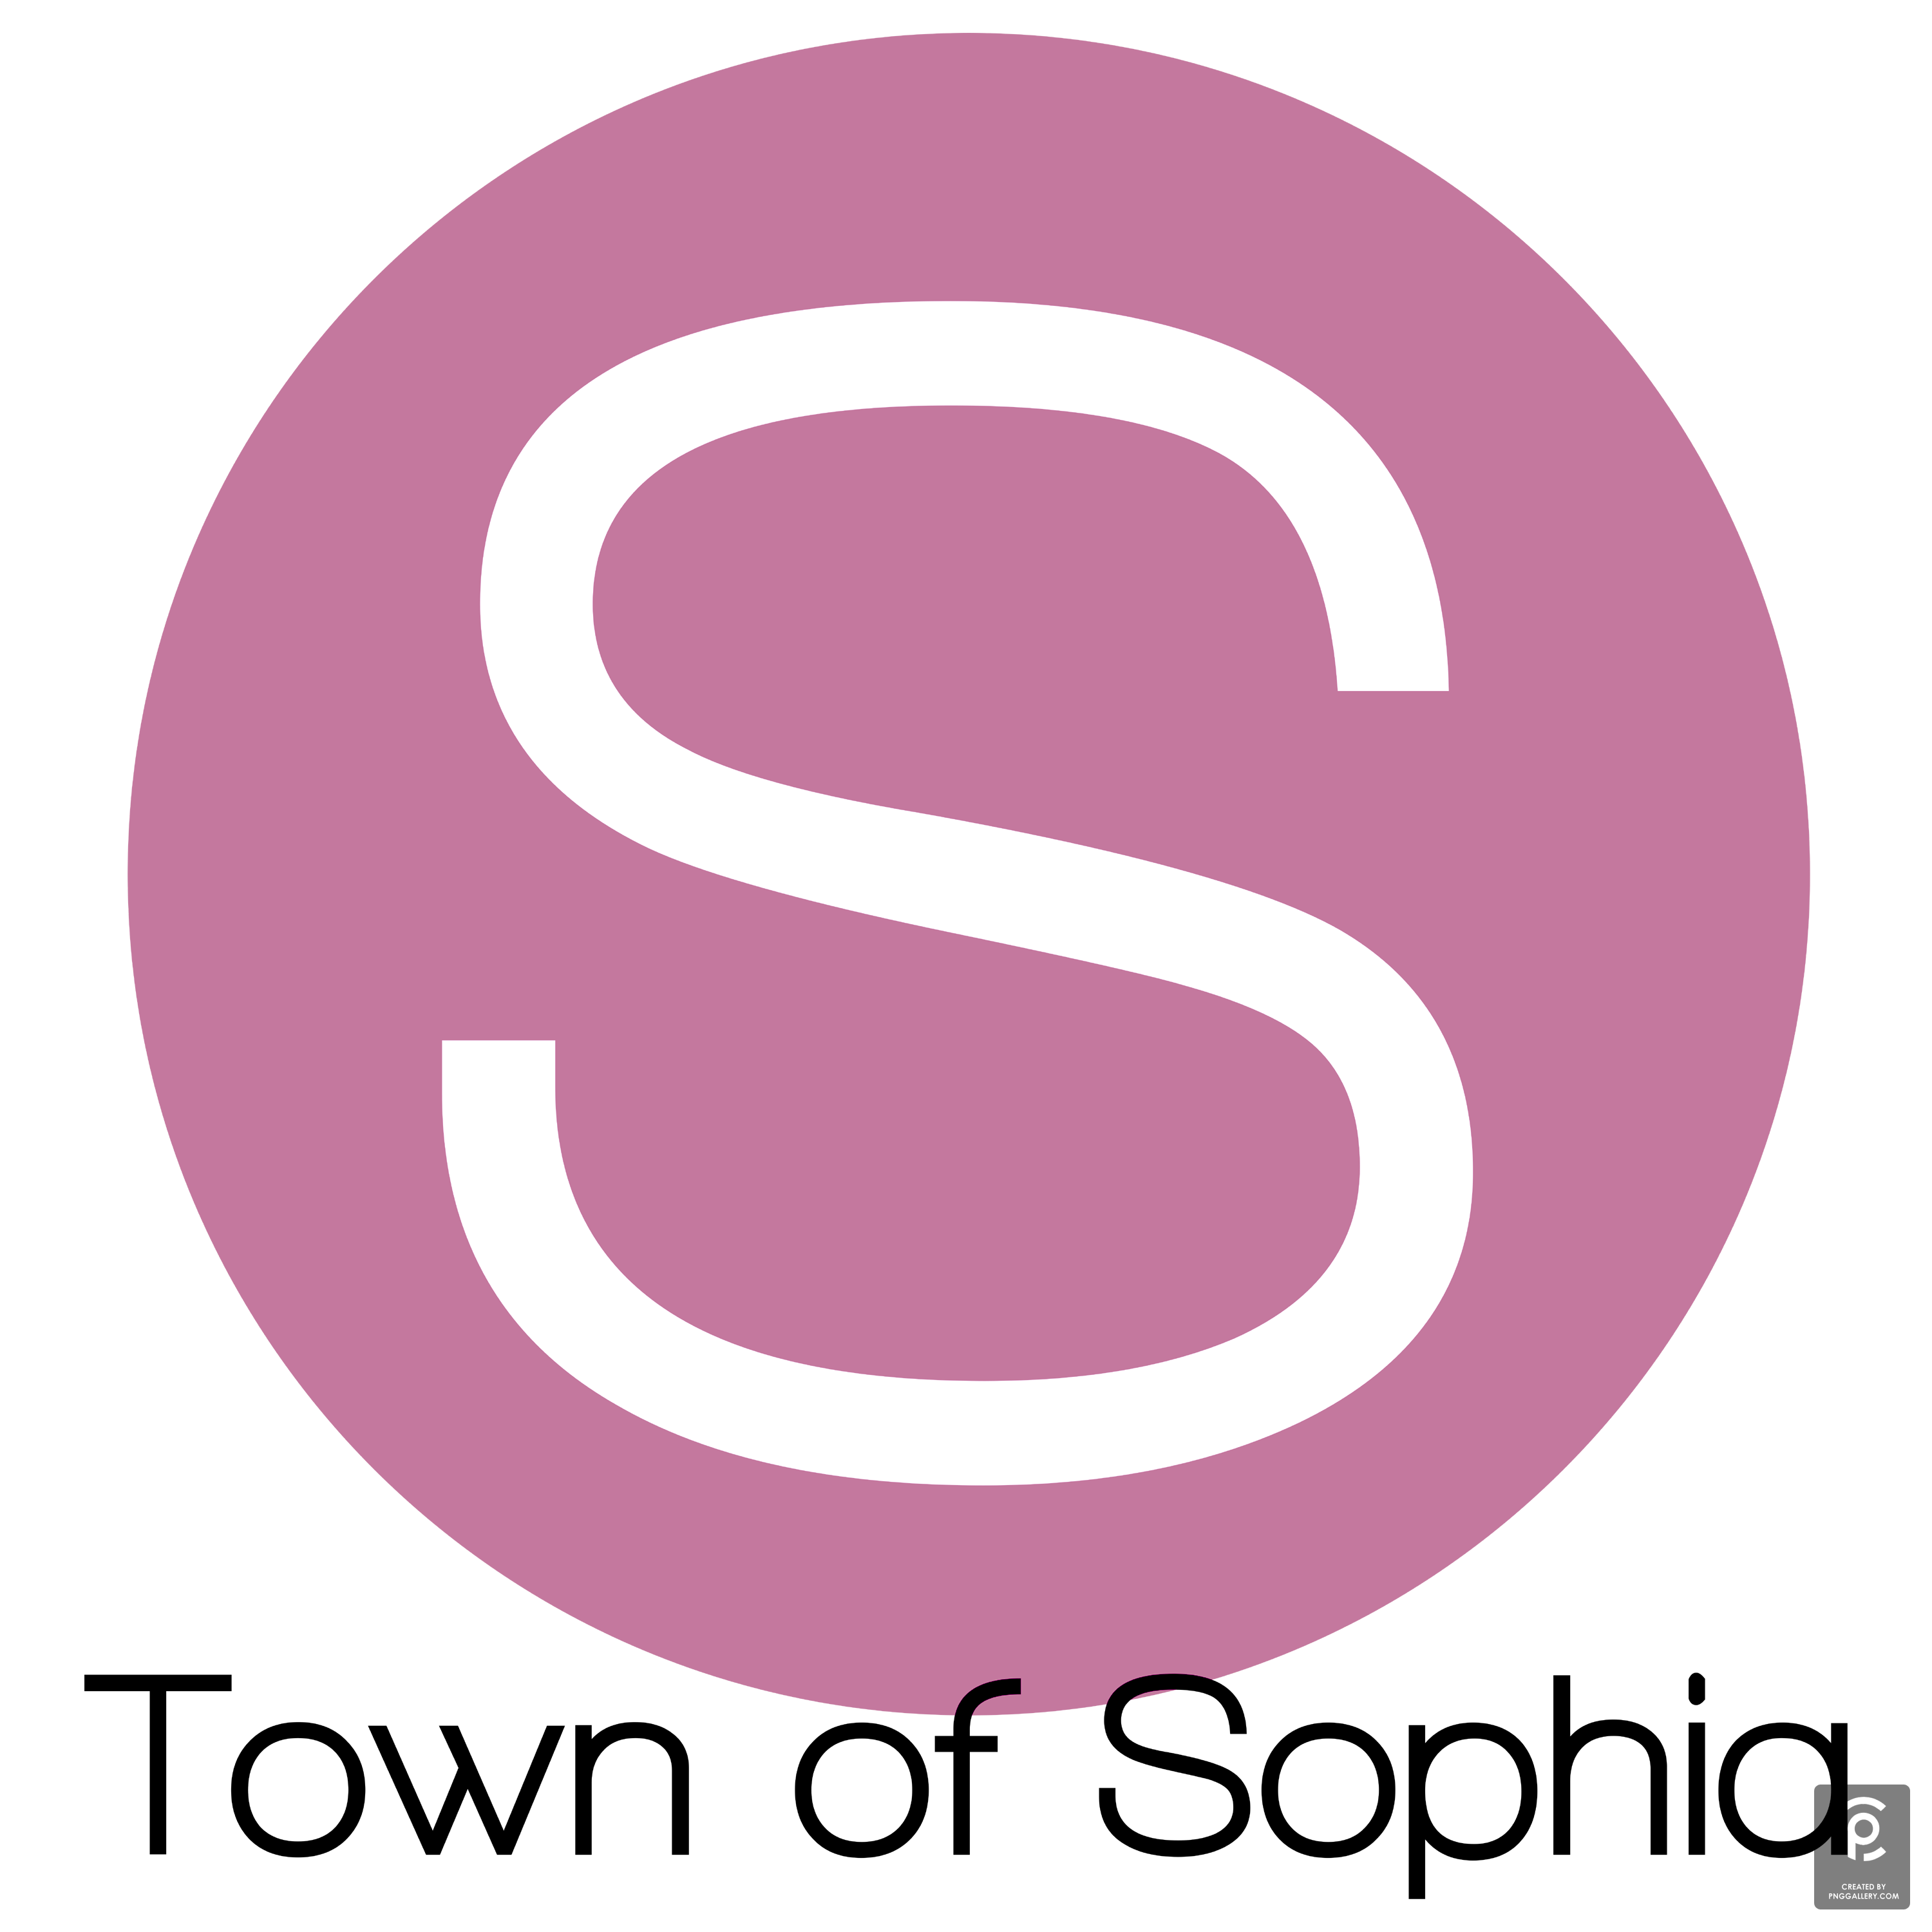 Sophia West Virginia Logo Transparent Photo